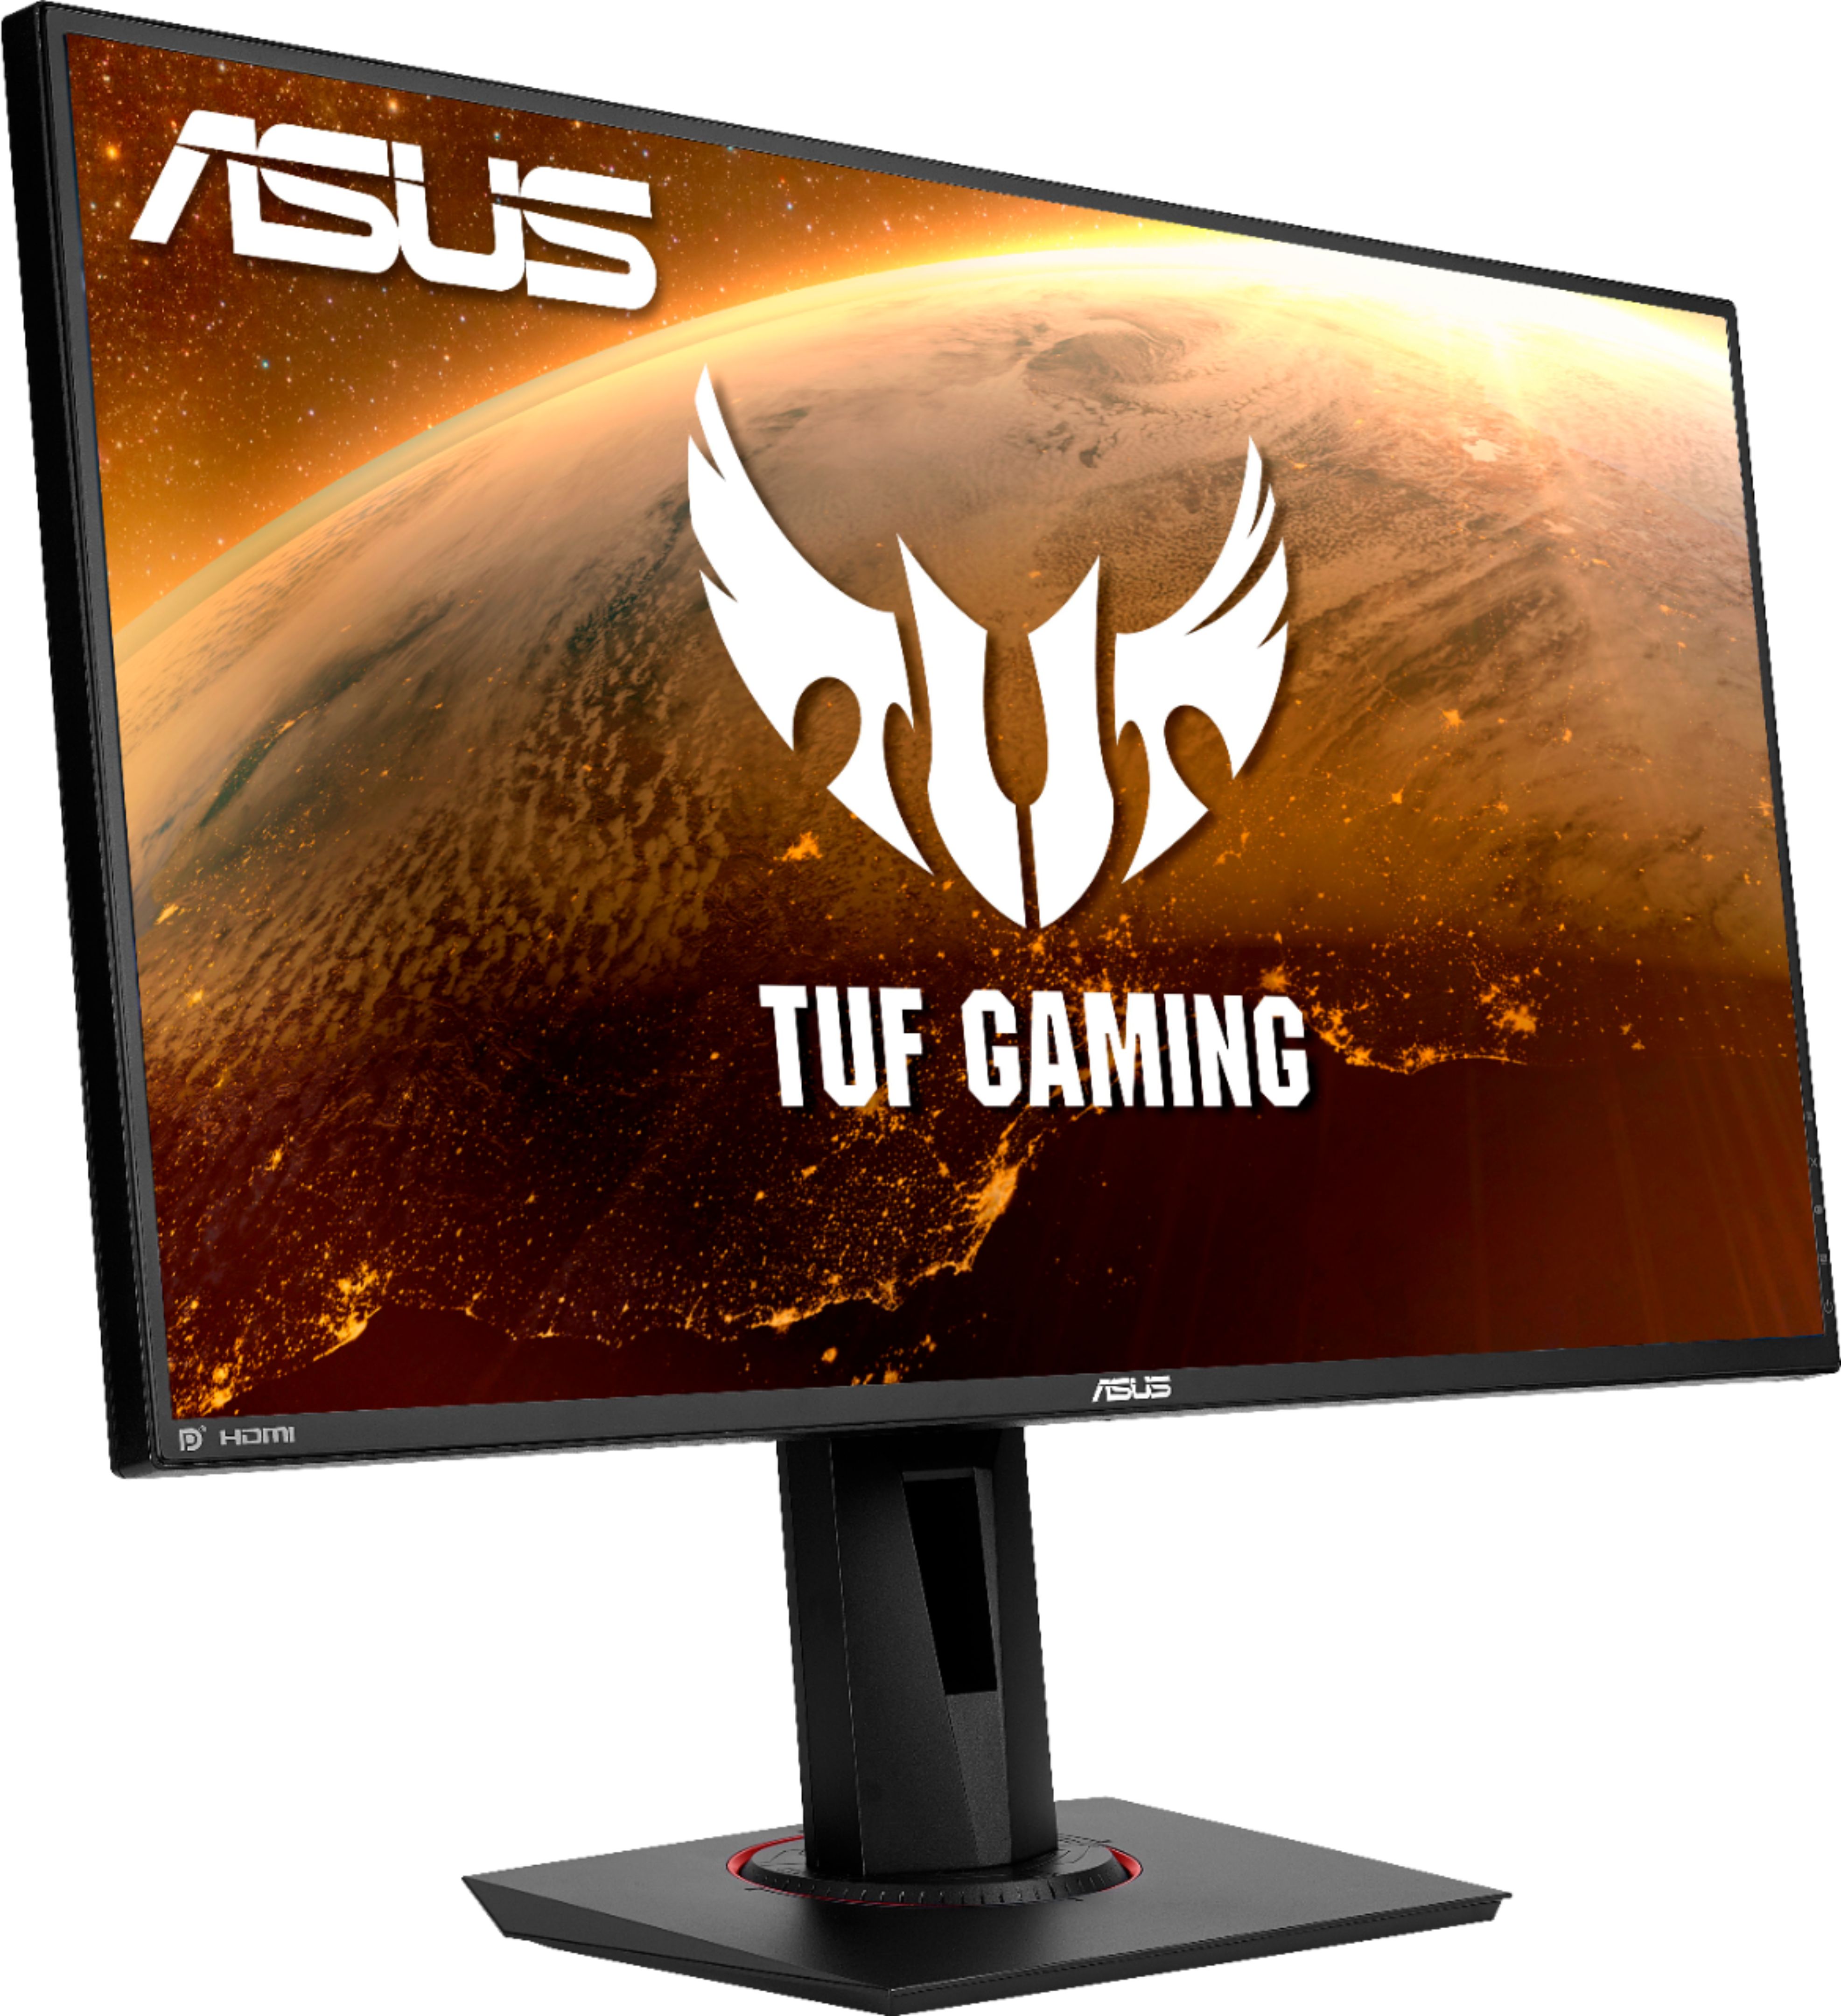 Angle View: ASUS - TUF Gaming VG289Q1A 28" IPS Widescreen 4K UHD Adaptive-Sync and FreeSync Gaming Monitor (HDMI, DisplayPort) - Black